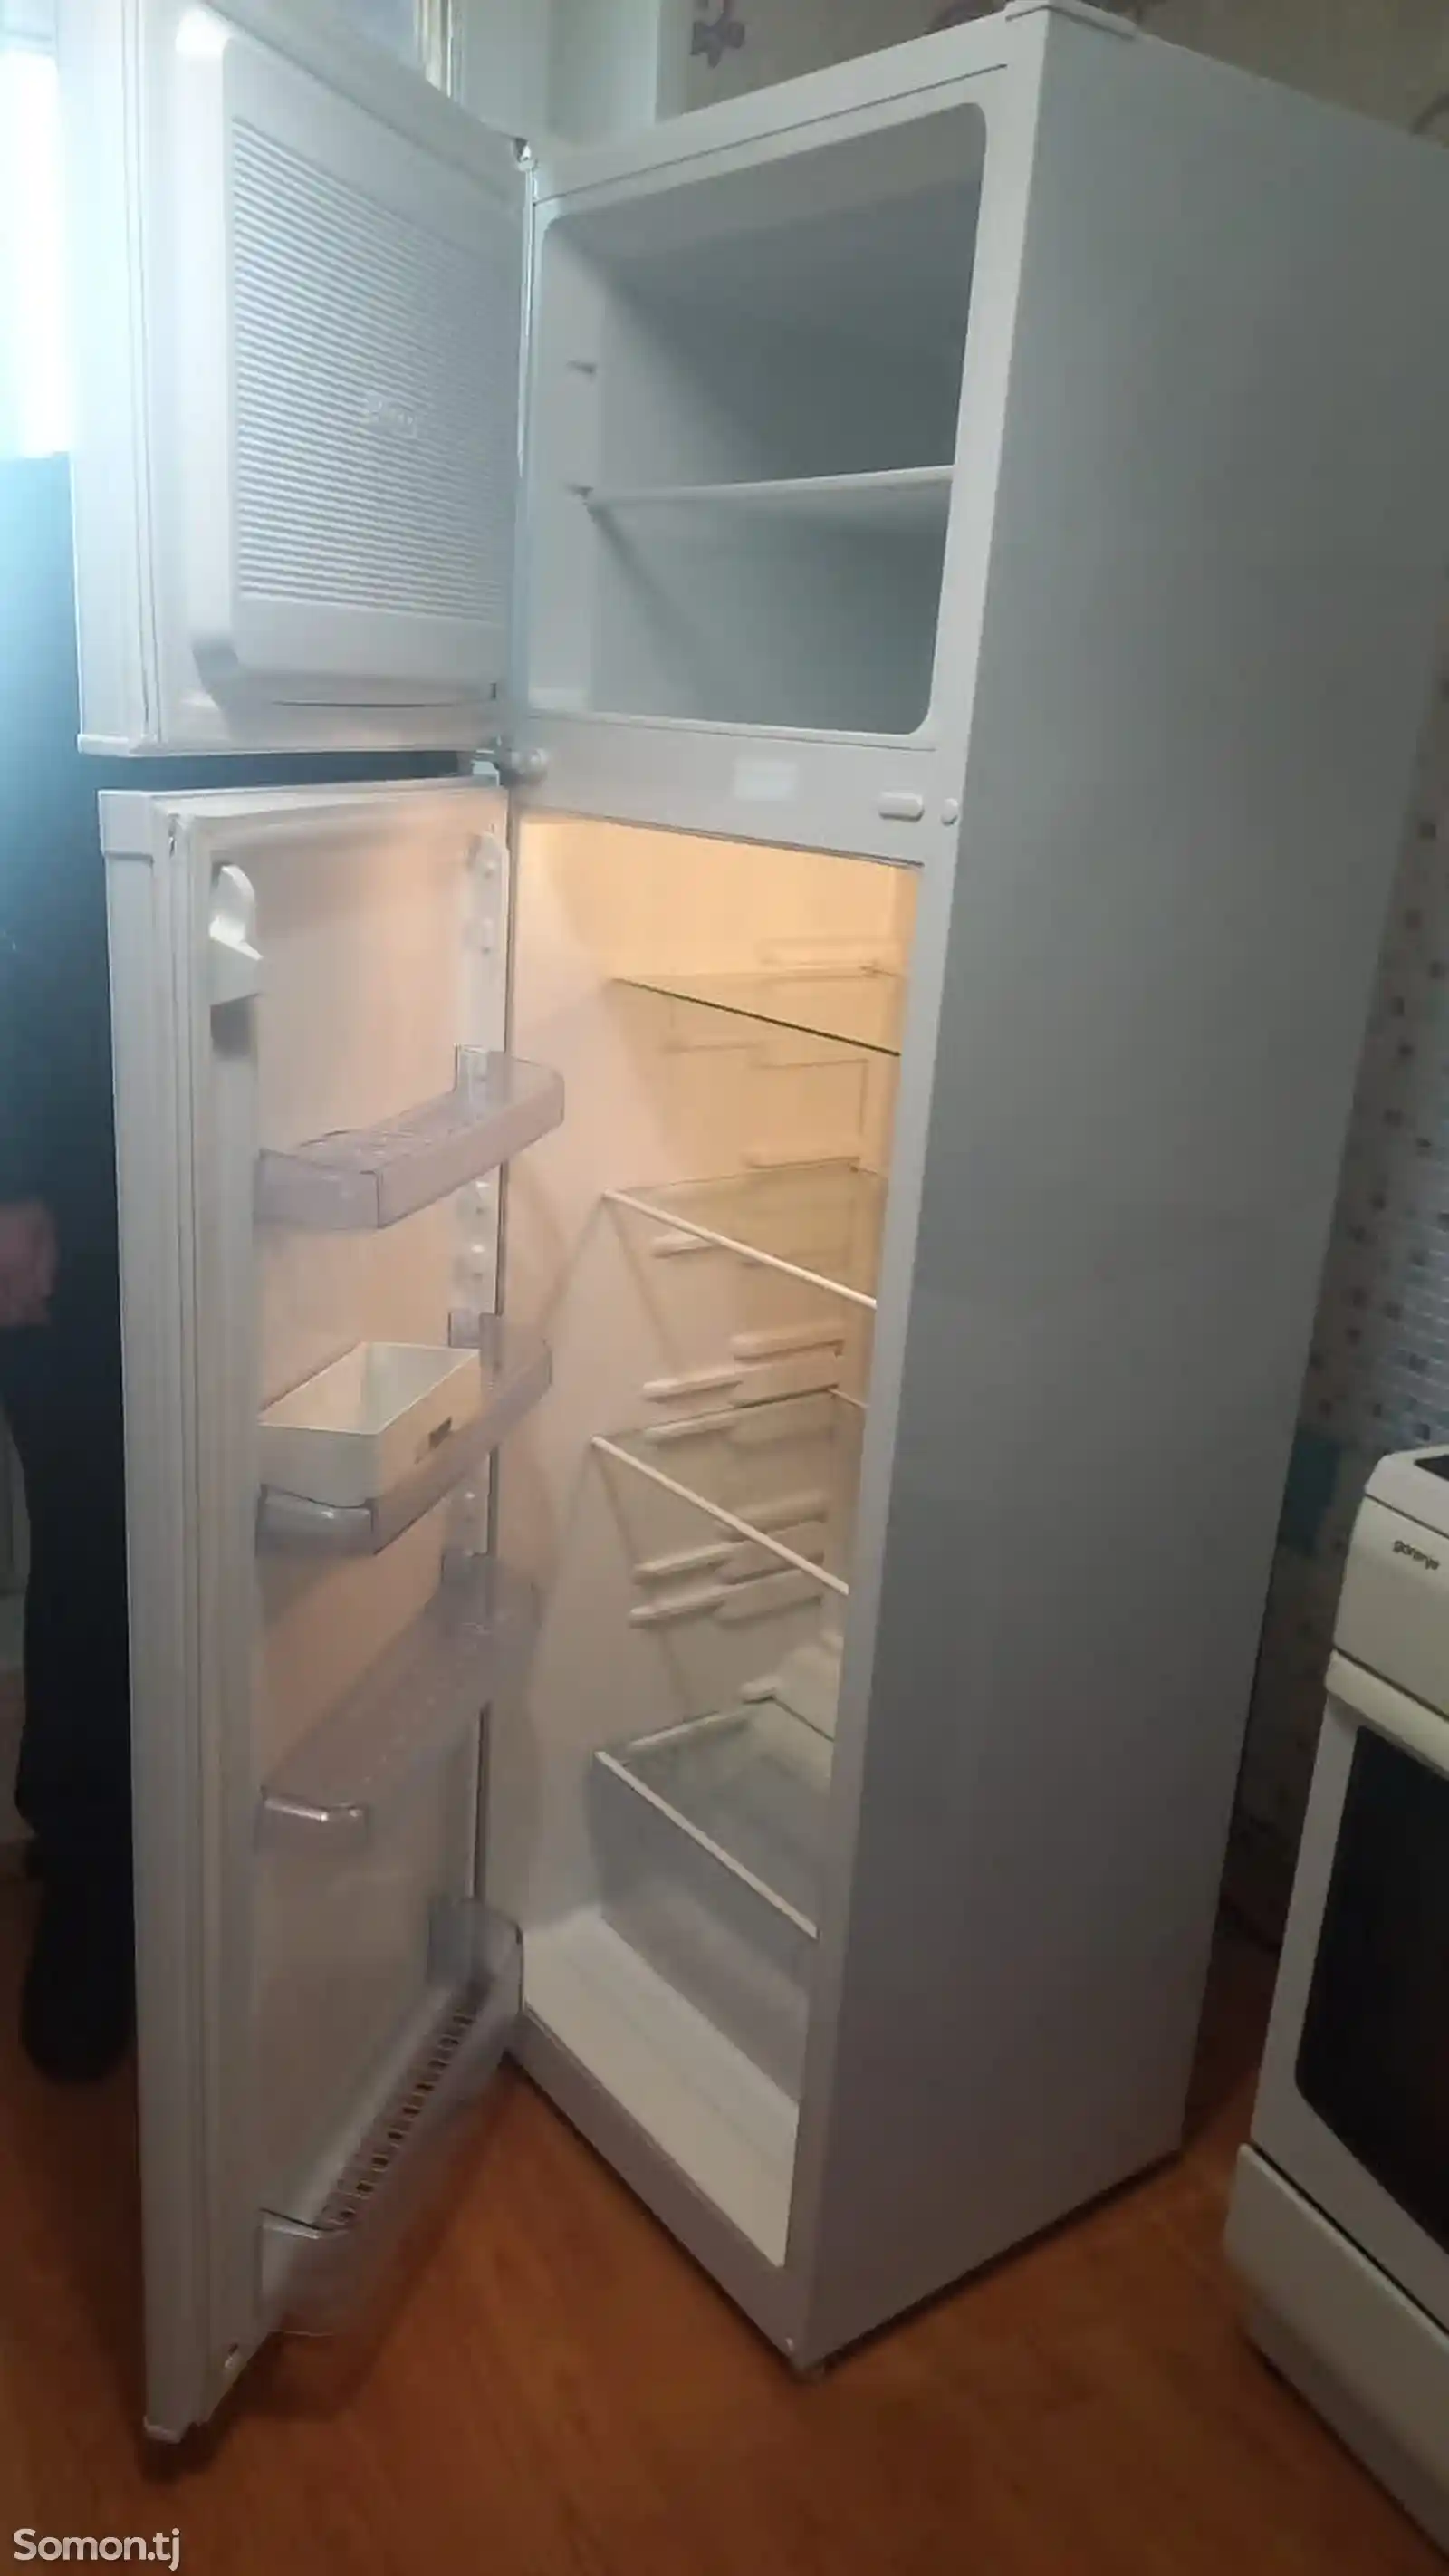 Холодильник Nord-2